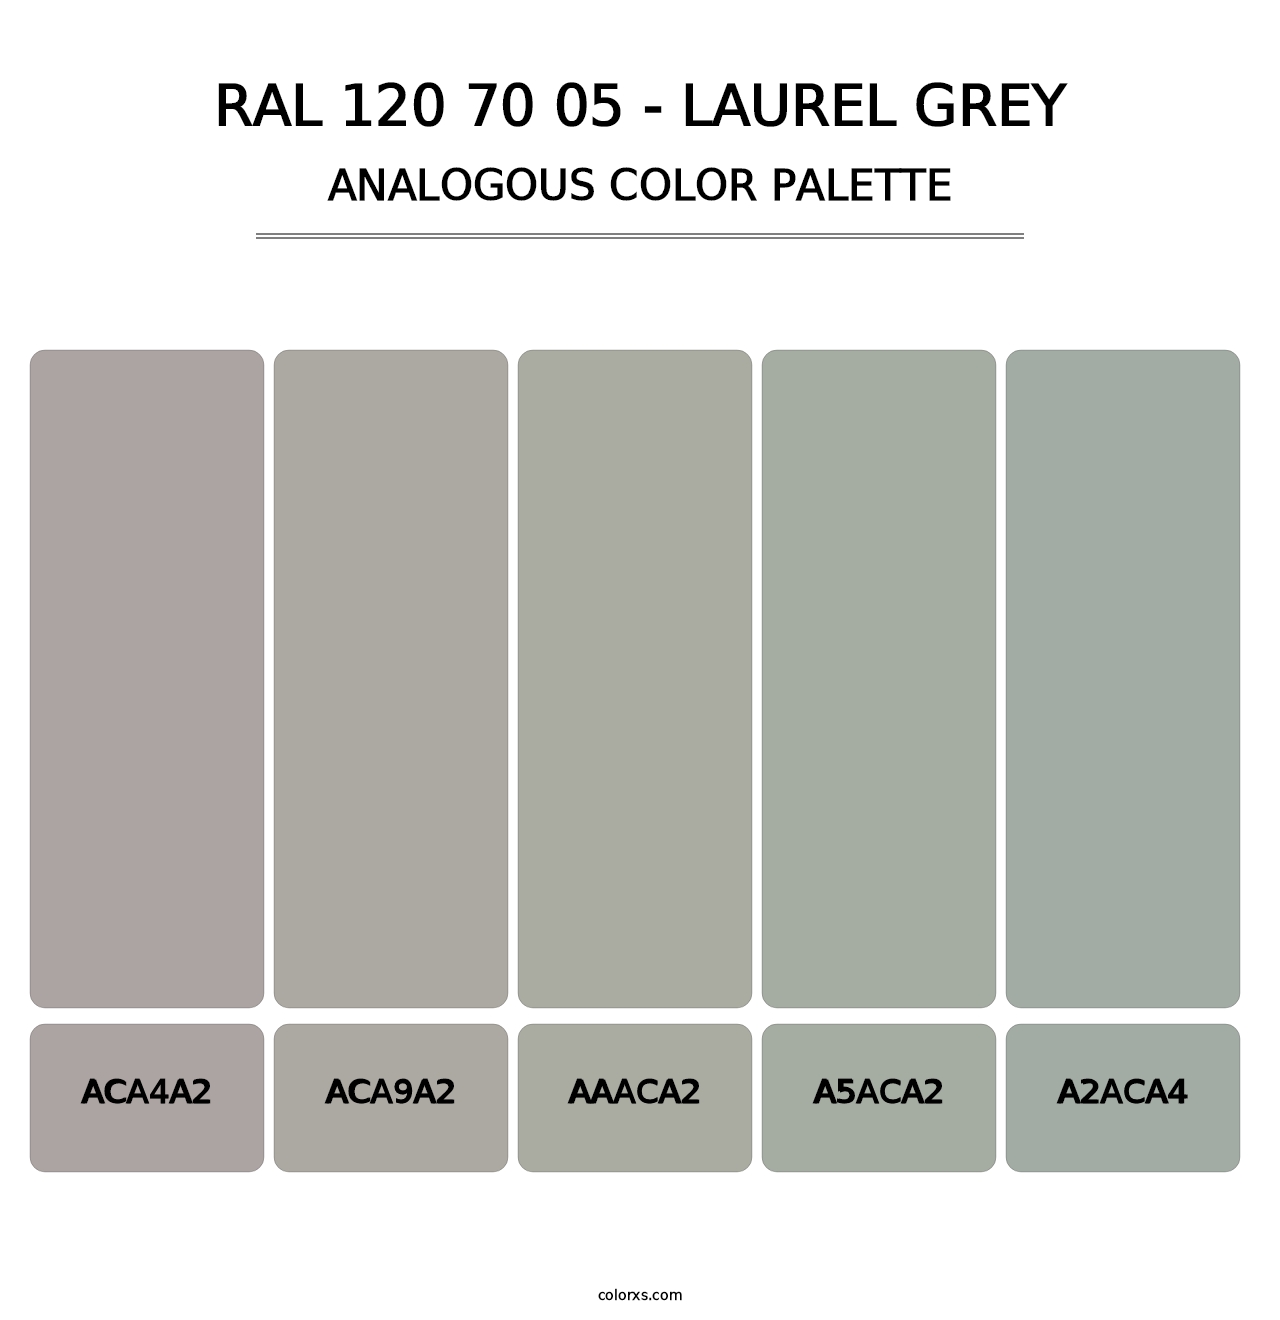 RAL 120 70 05 - Laurel Grey - Analogous Color Palette